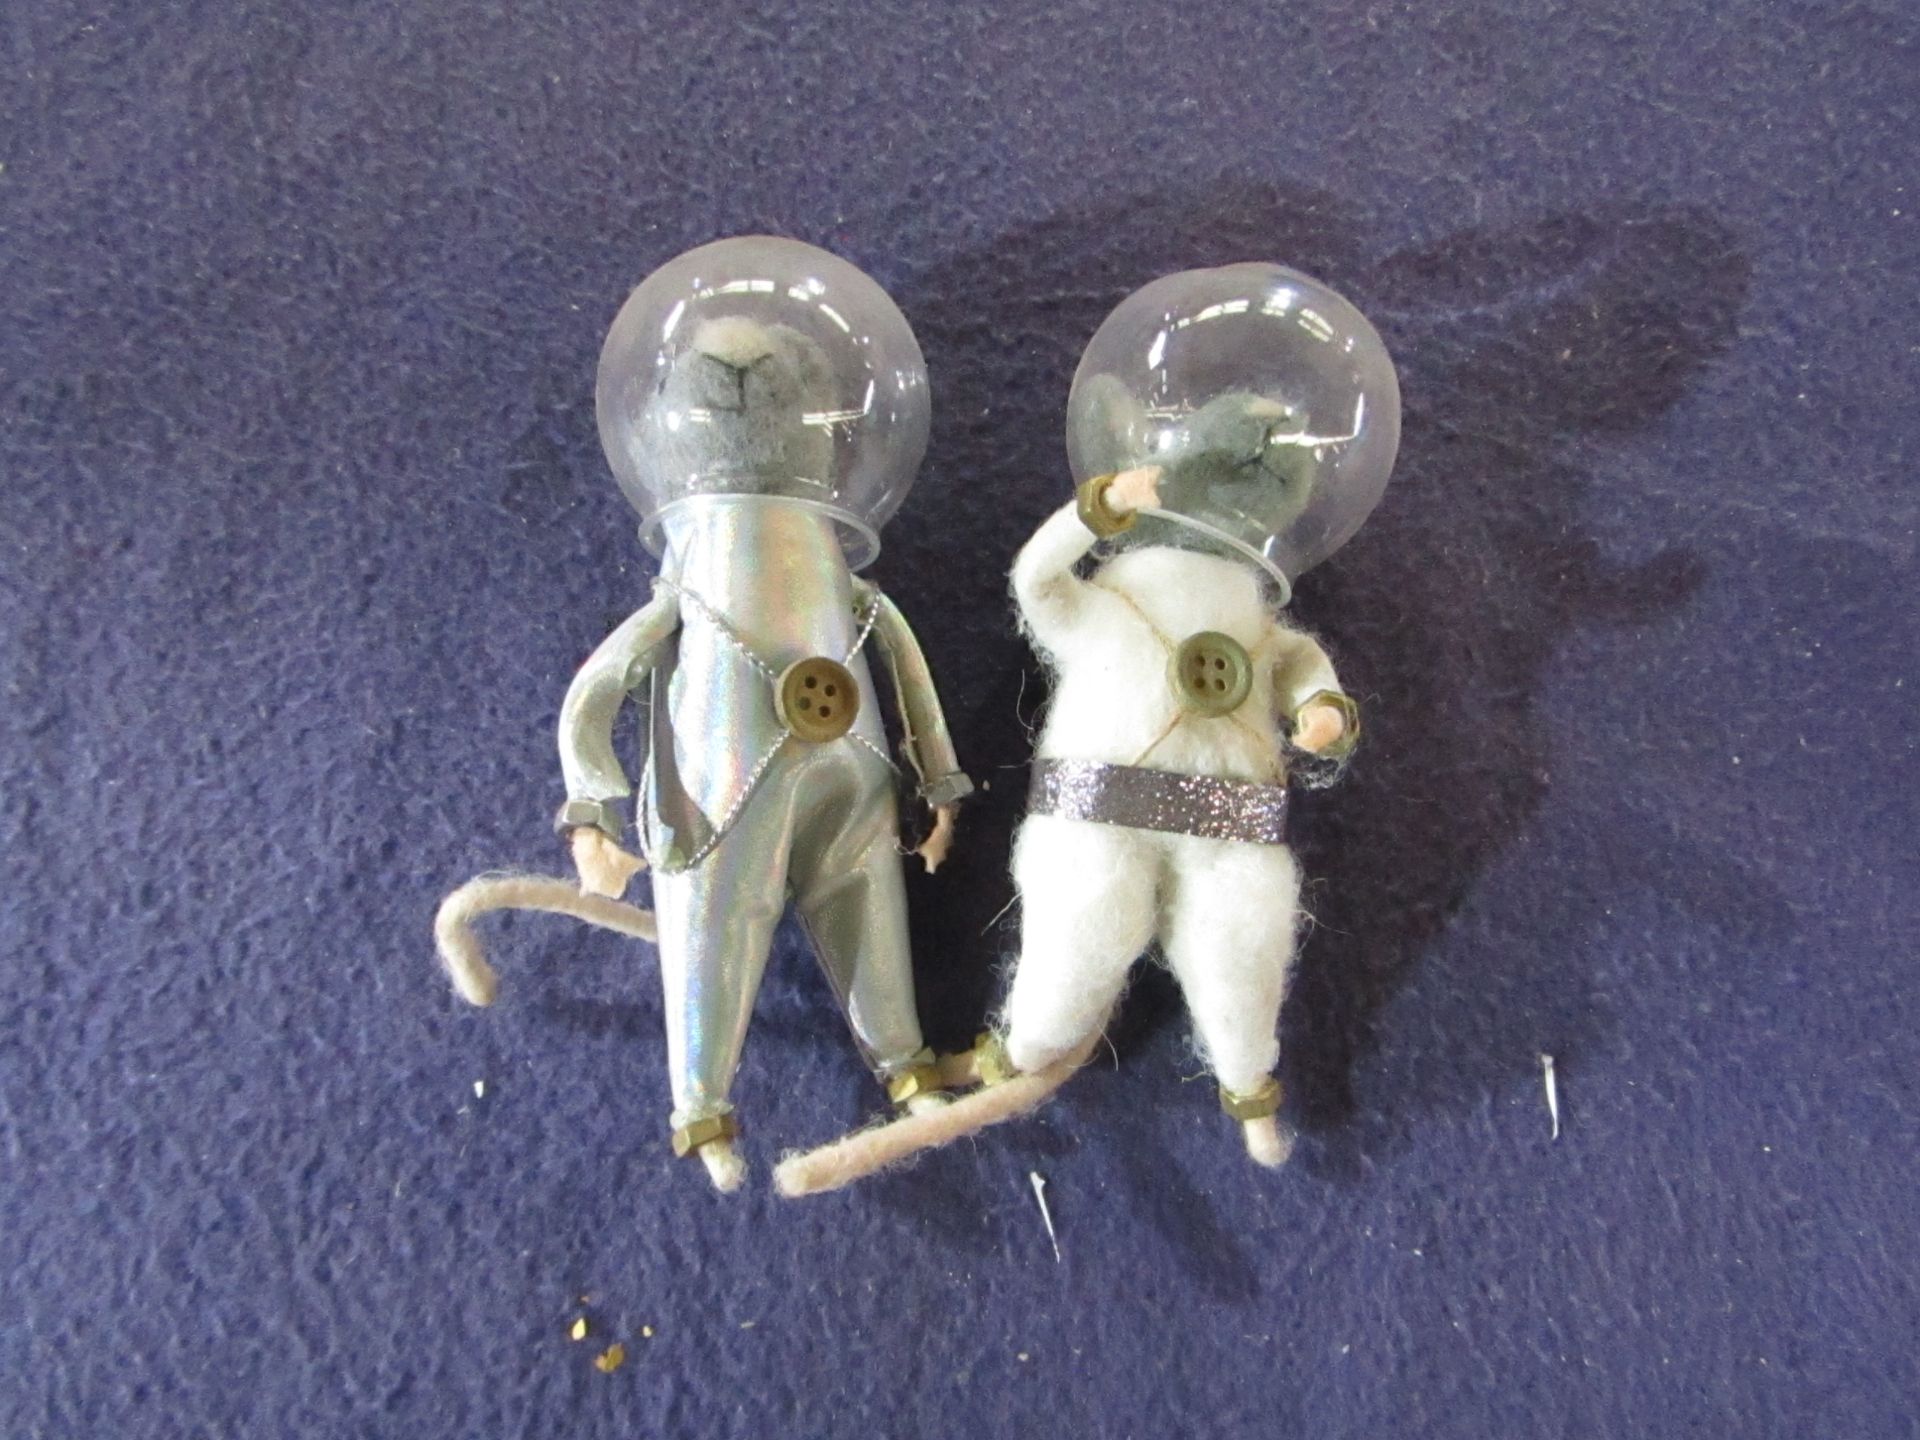 16x Astronaut Mice - Unused & Packaged.